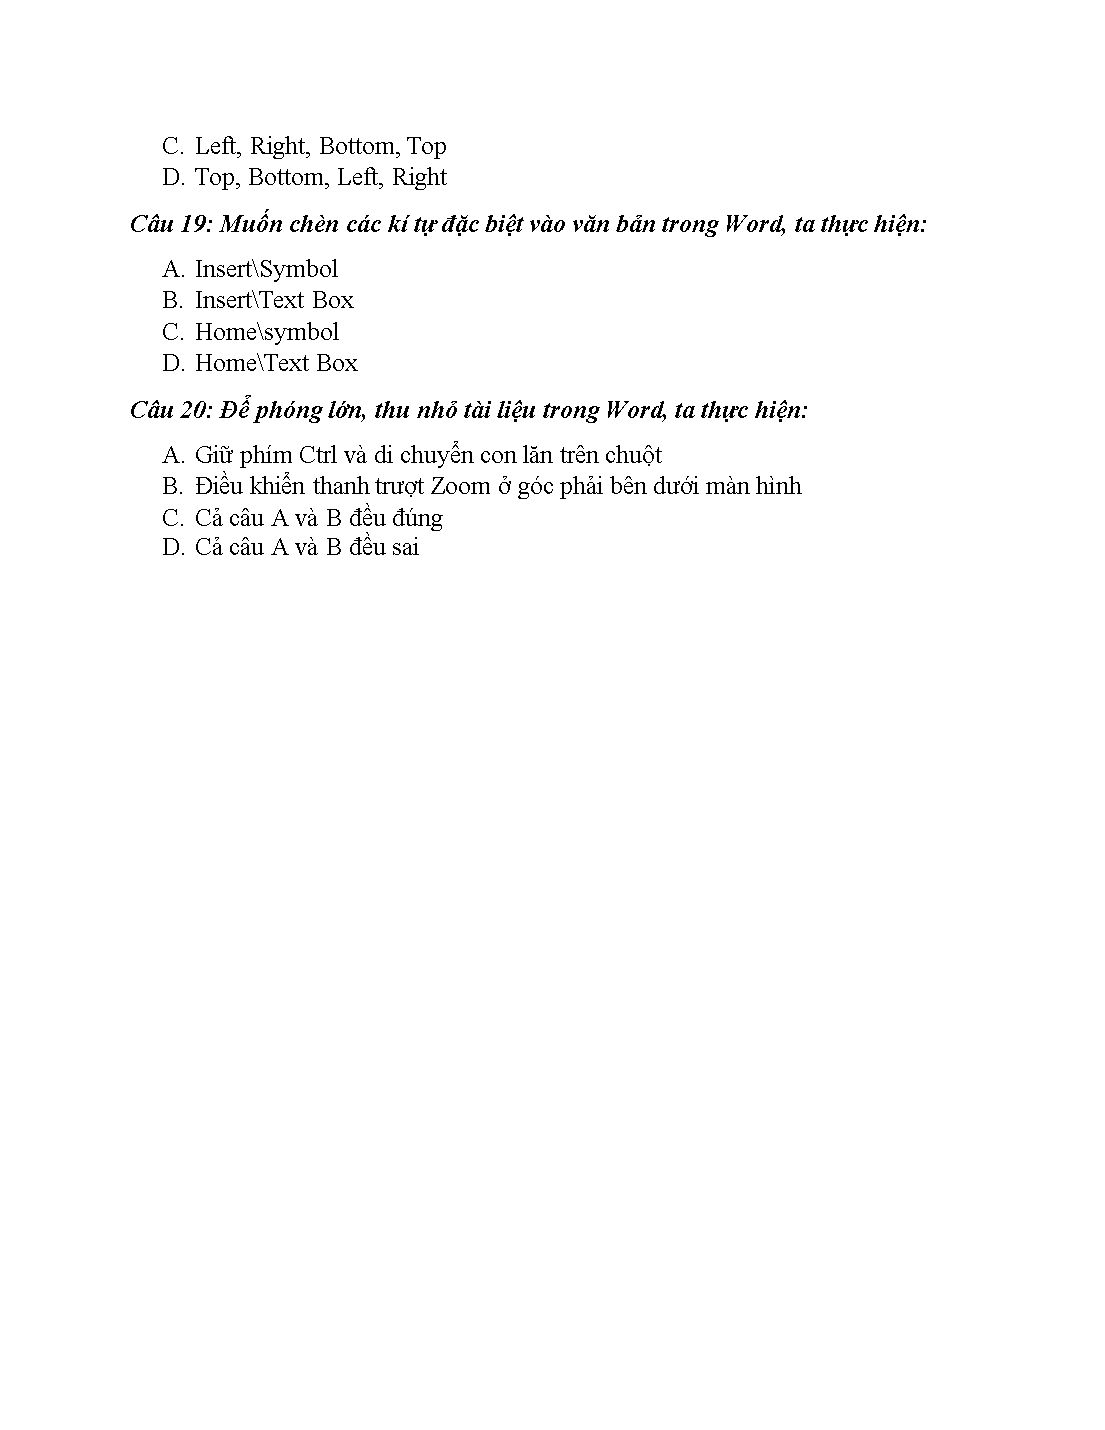 Ôn tập kiểm tra học kỳ II Tin học 10 trang 10